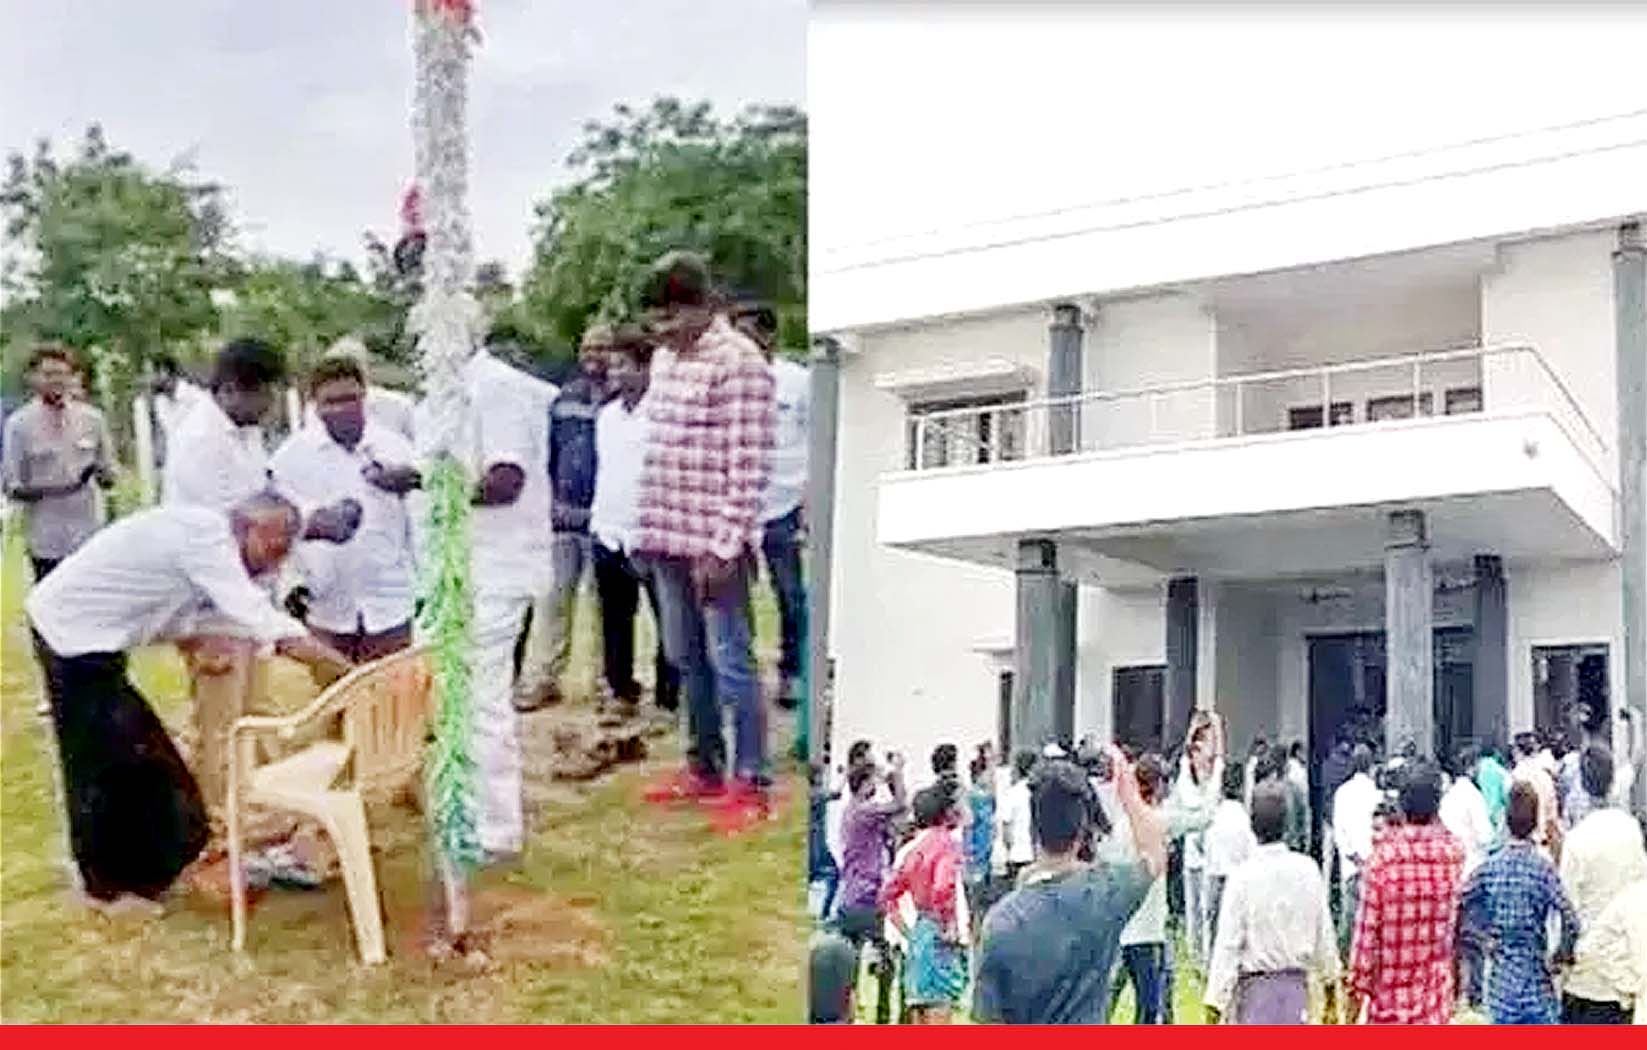 तेलंगाना में राष्ट्रीय ध्वजारोहण के कुछ मिनट बाद ही टीआरएस नेता तम्मिनेनी कृष्णैया की हत्या